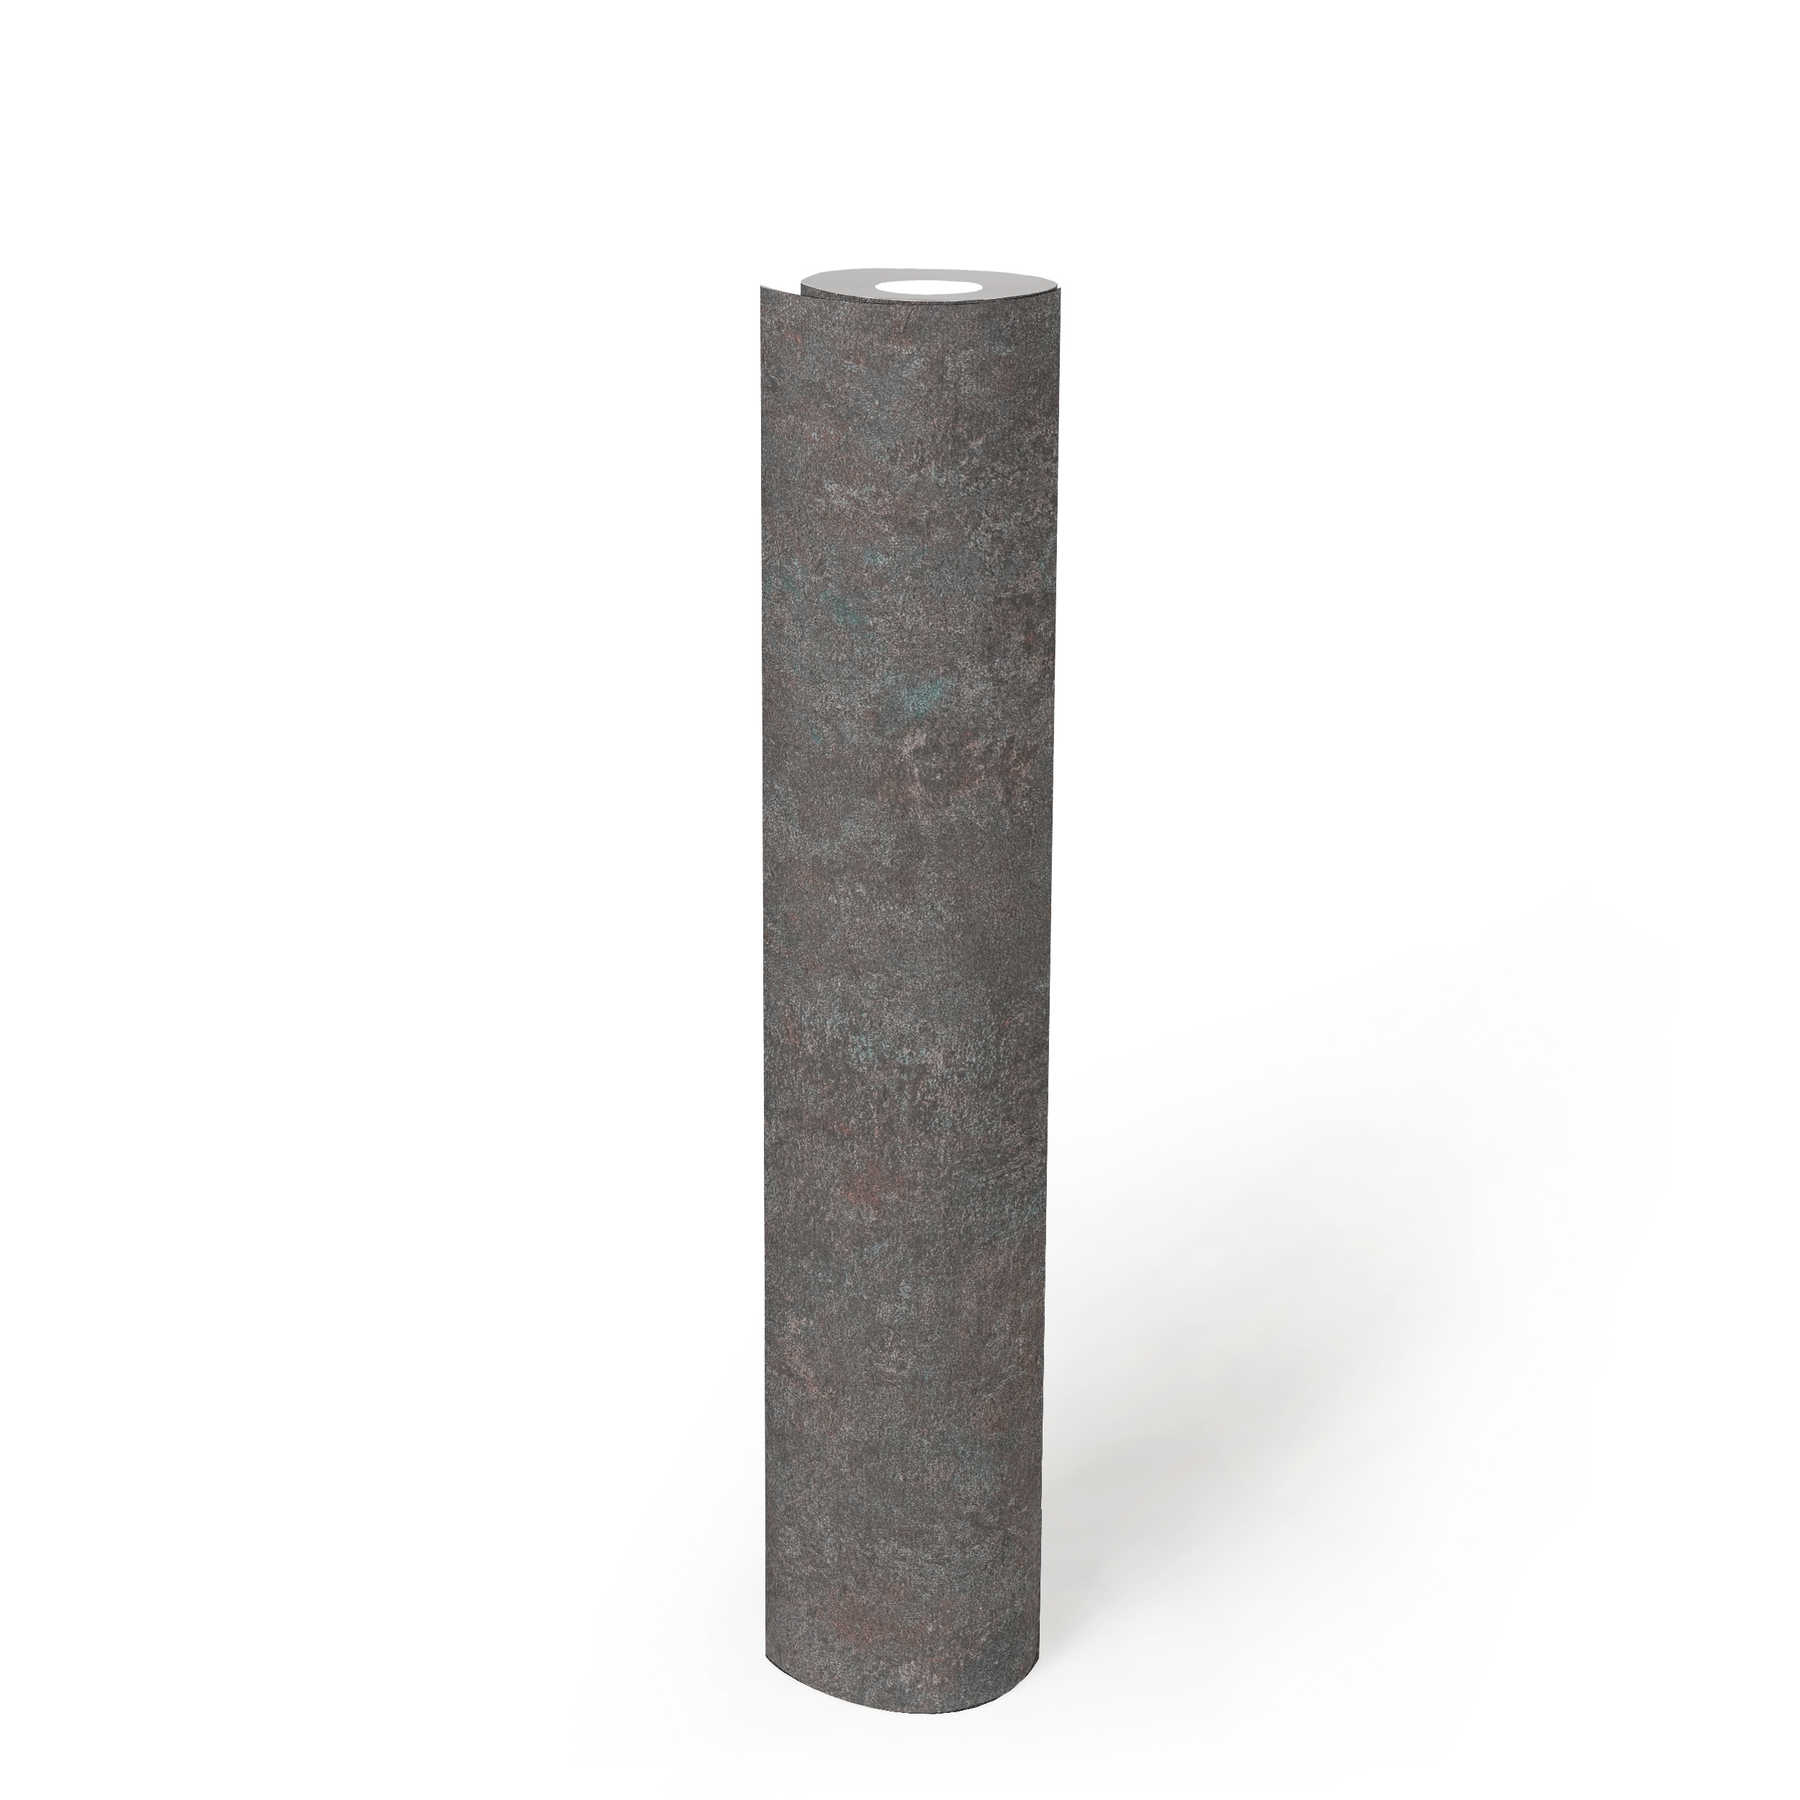             Metalloptik Tapete mit Rost-Akzenten im Industrial Style – Grau, Violett, Blau
        